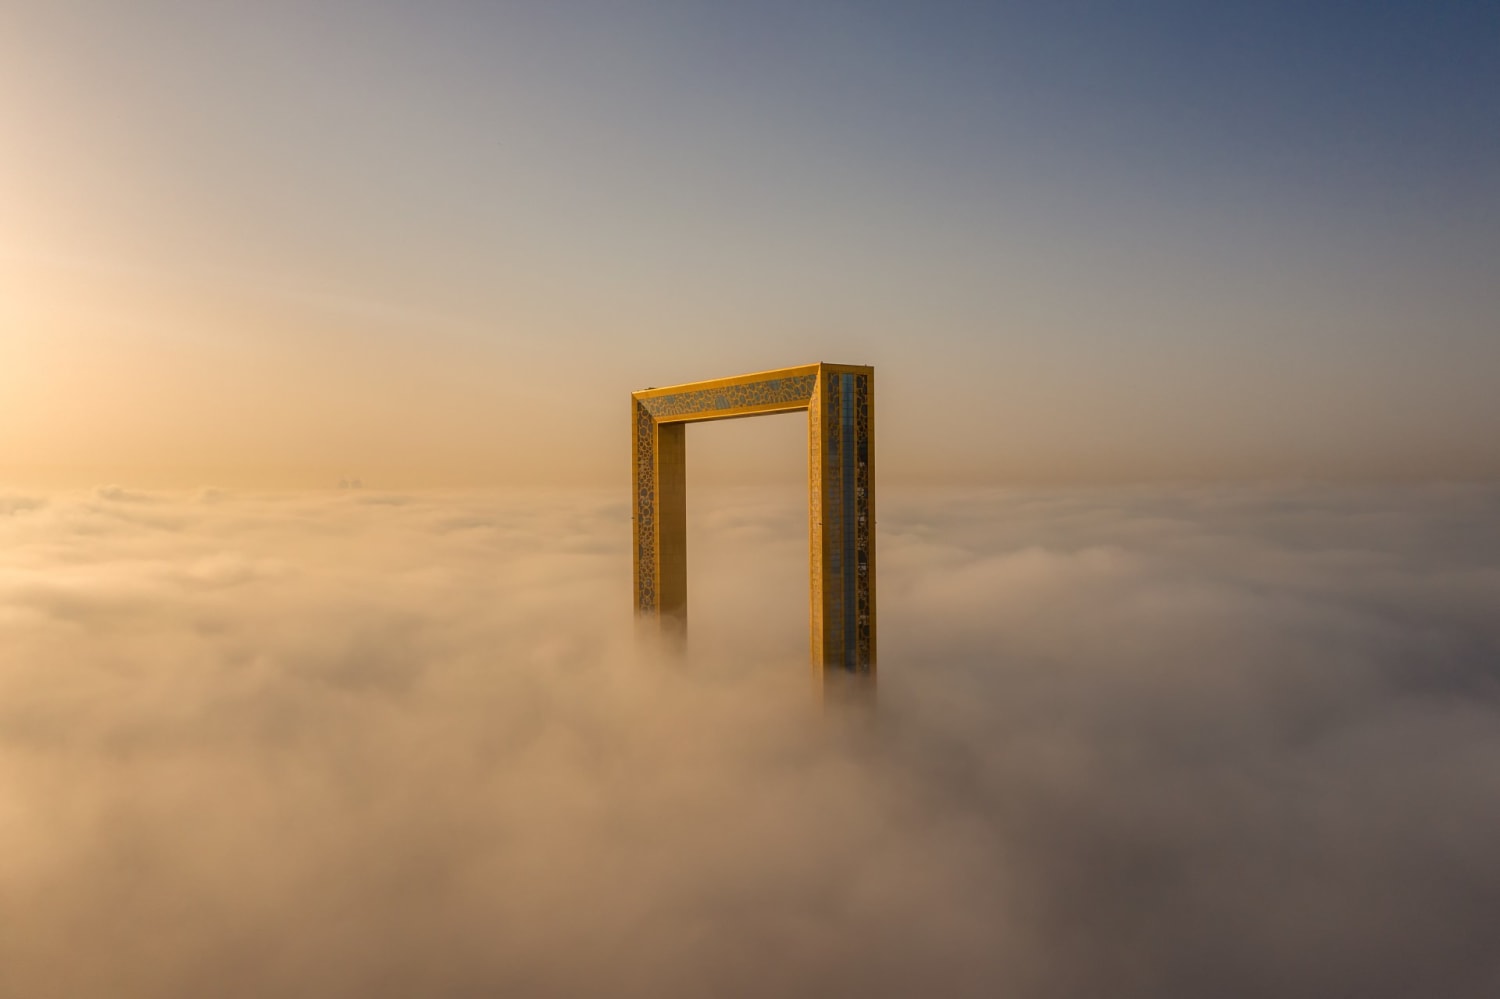 The Frame, Dubai, by Bachir Moukarzel